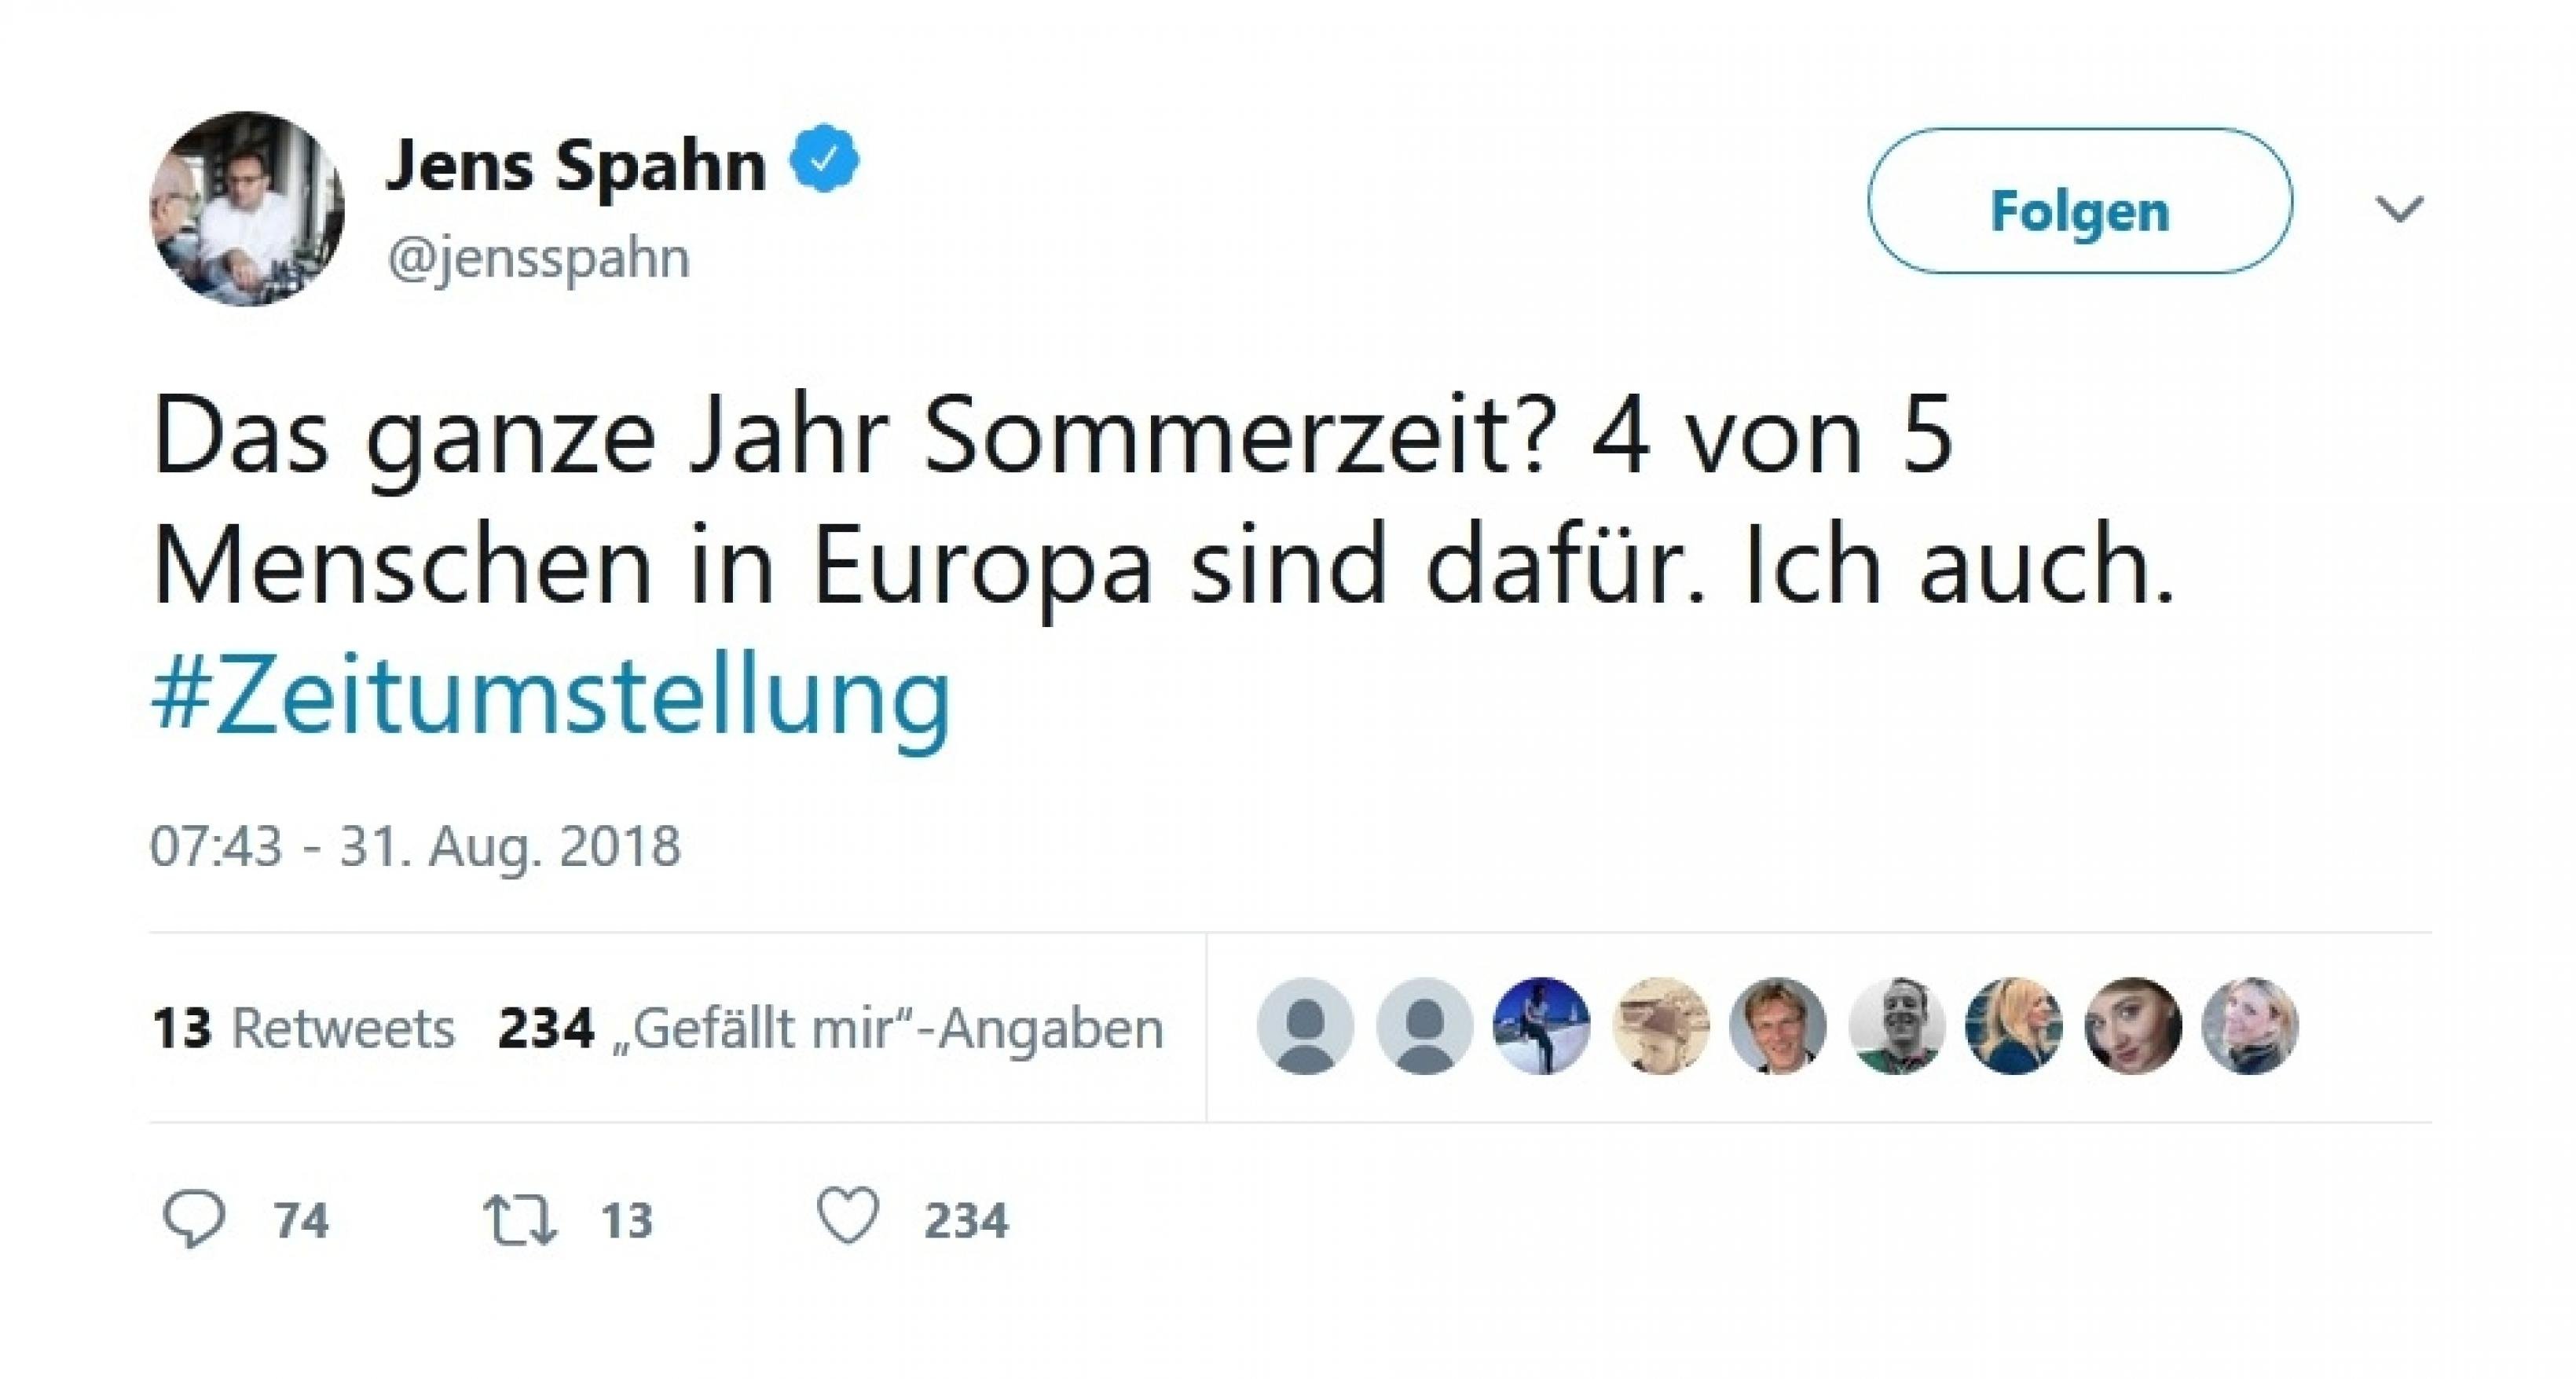 Tweet von Jens Spahn: Das ganze Jahr Sommerzeit? 4 von 5 Menschen in Europa sind dafür. ich auch!